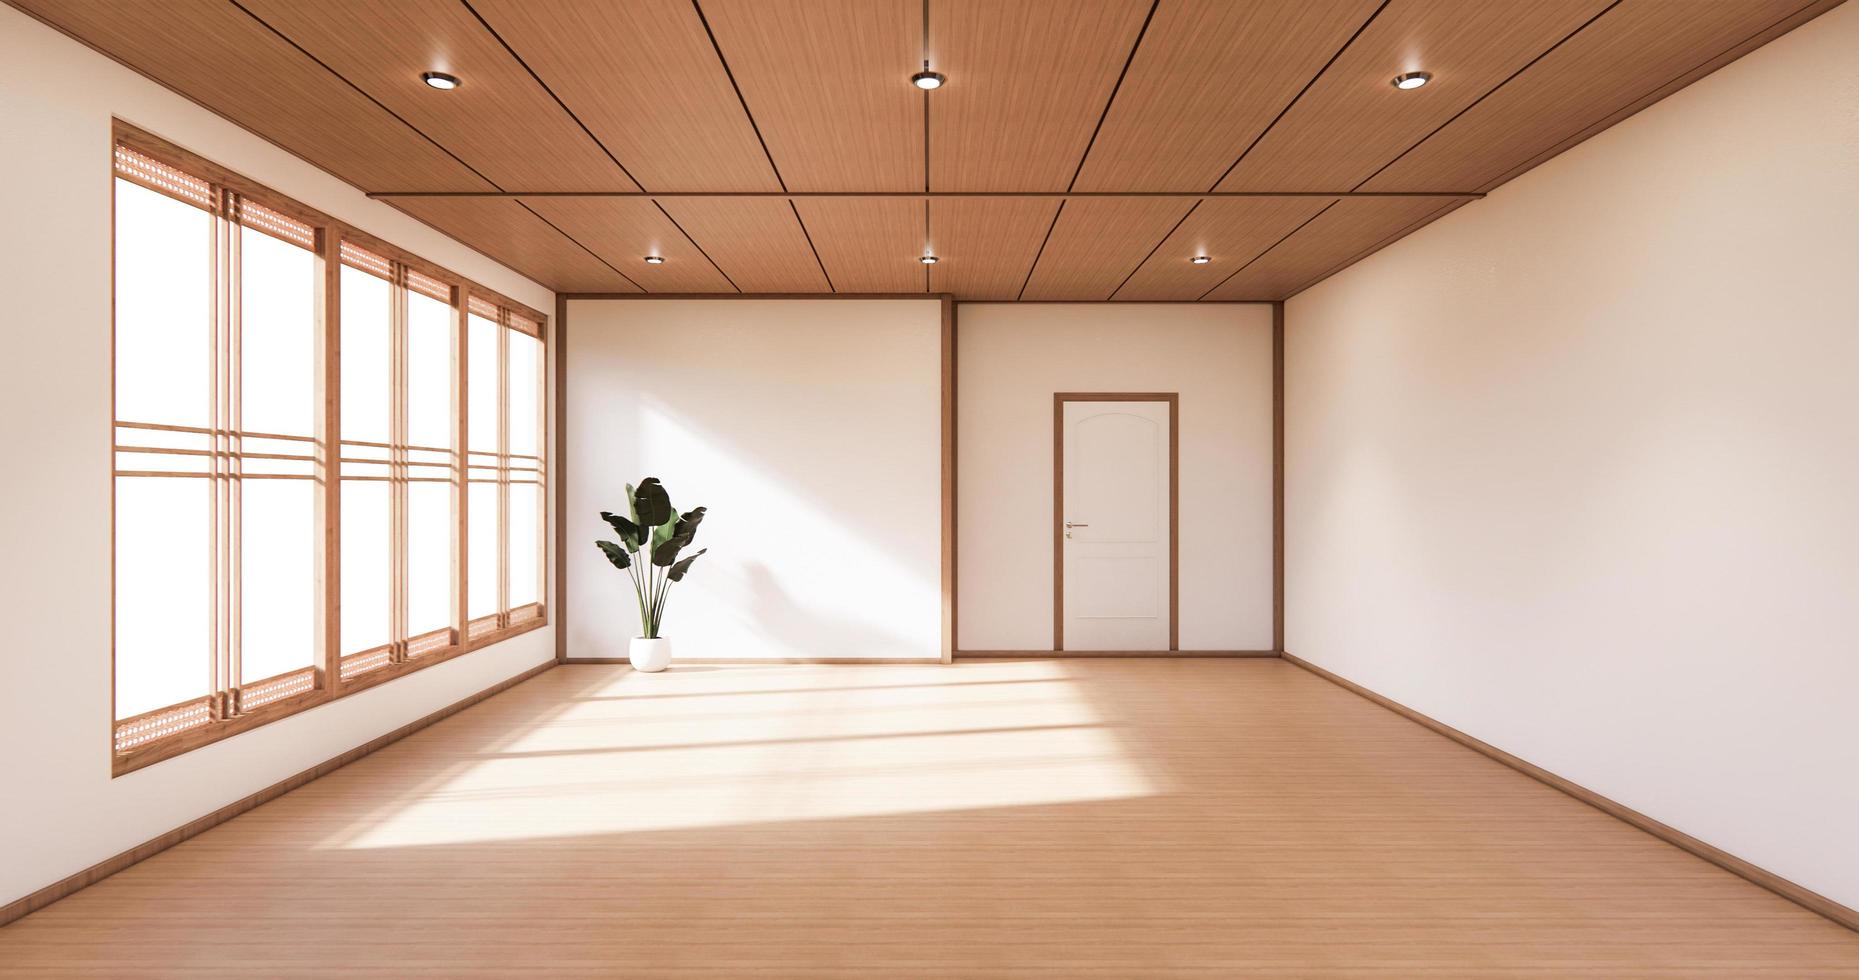 sala de diseño minimalista de estilo japonés. Representación 3d foto